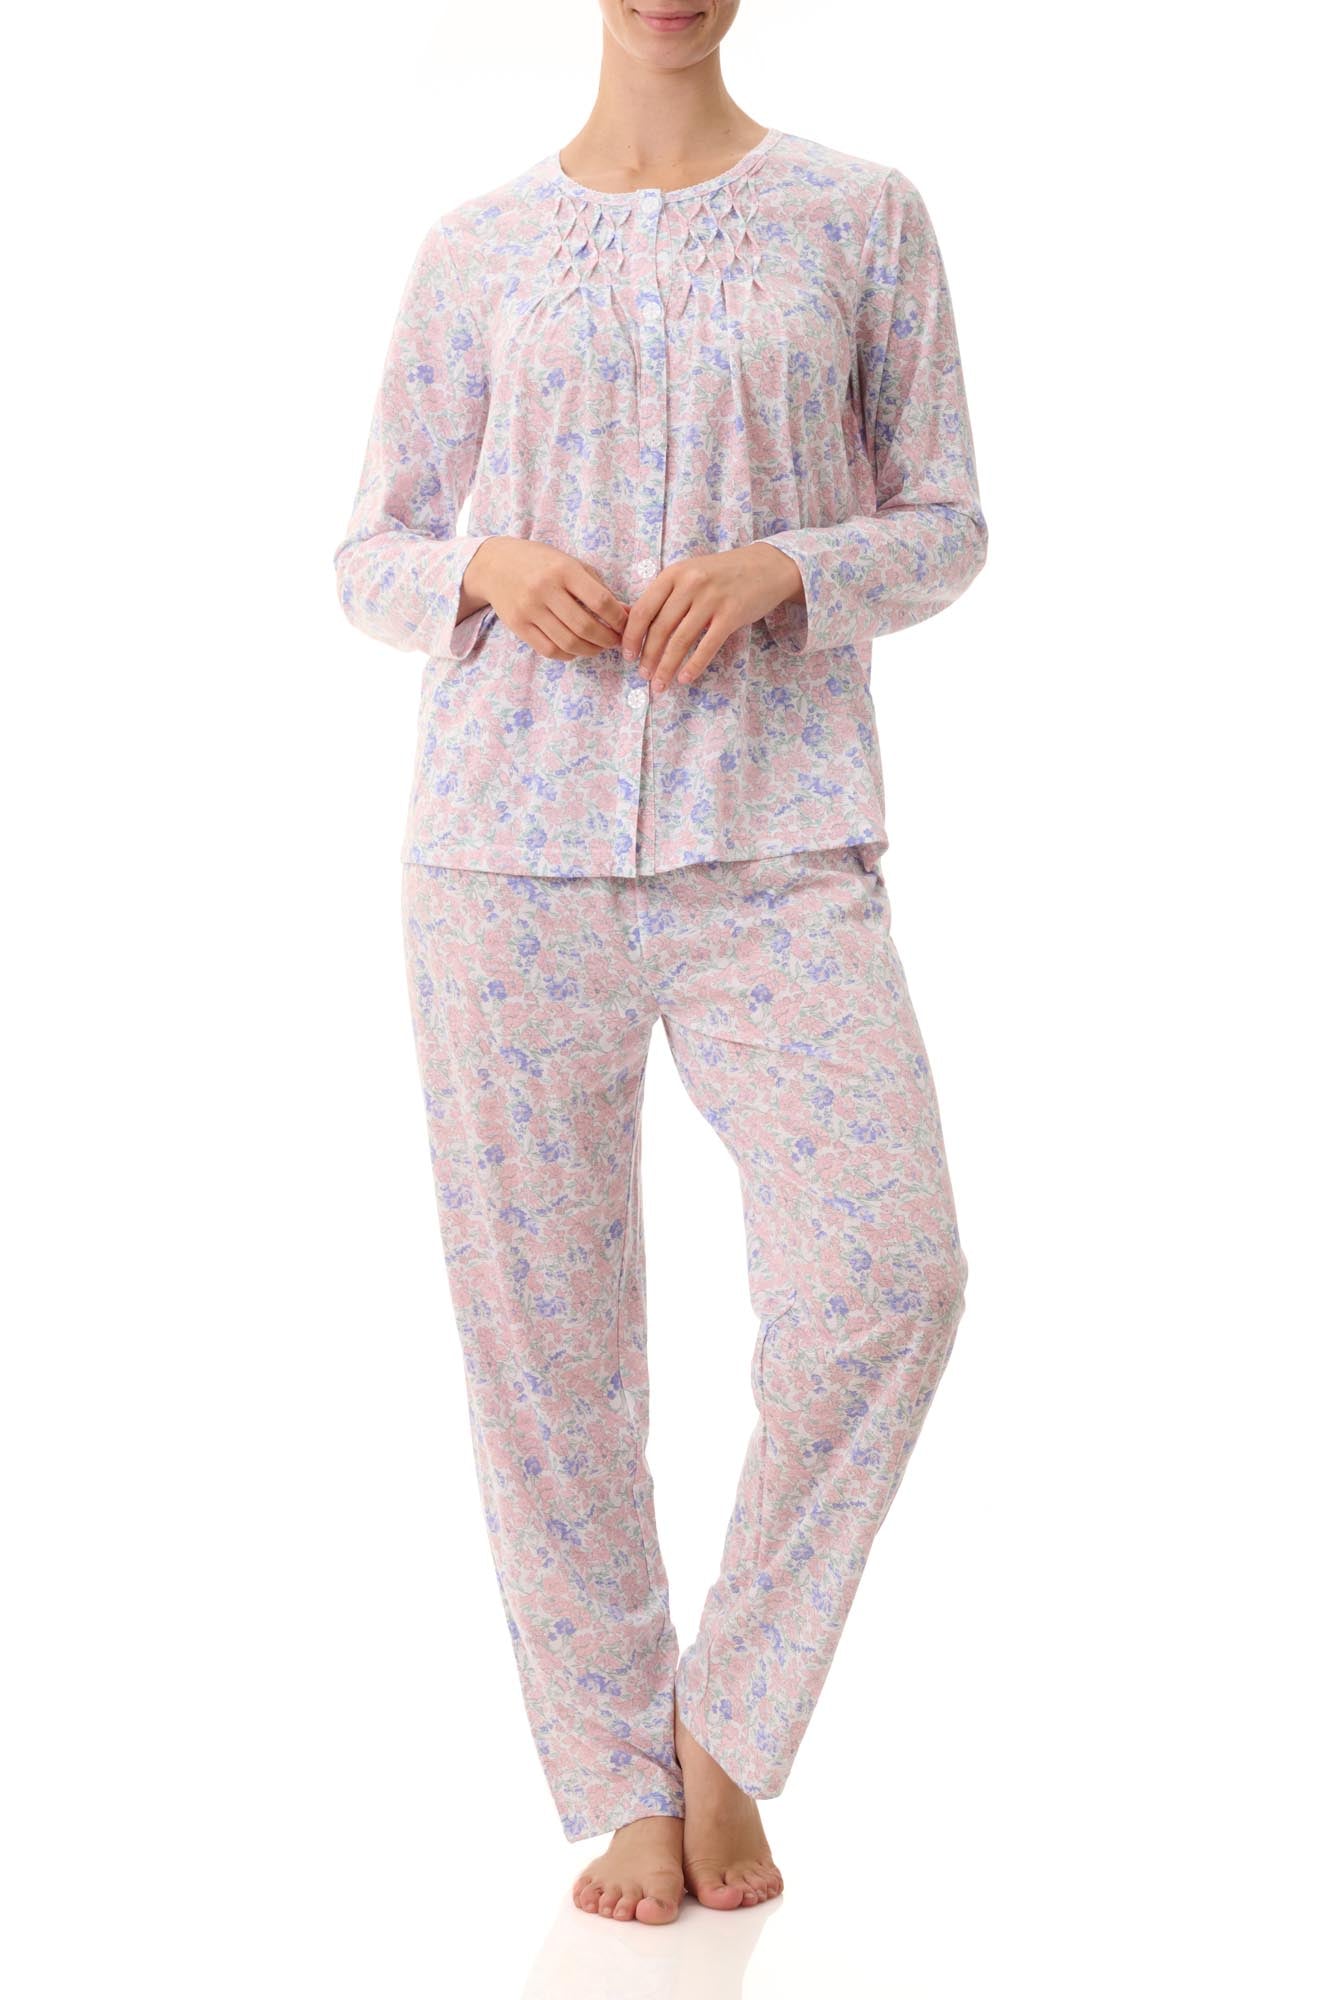 3HP15M - Long pyjama